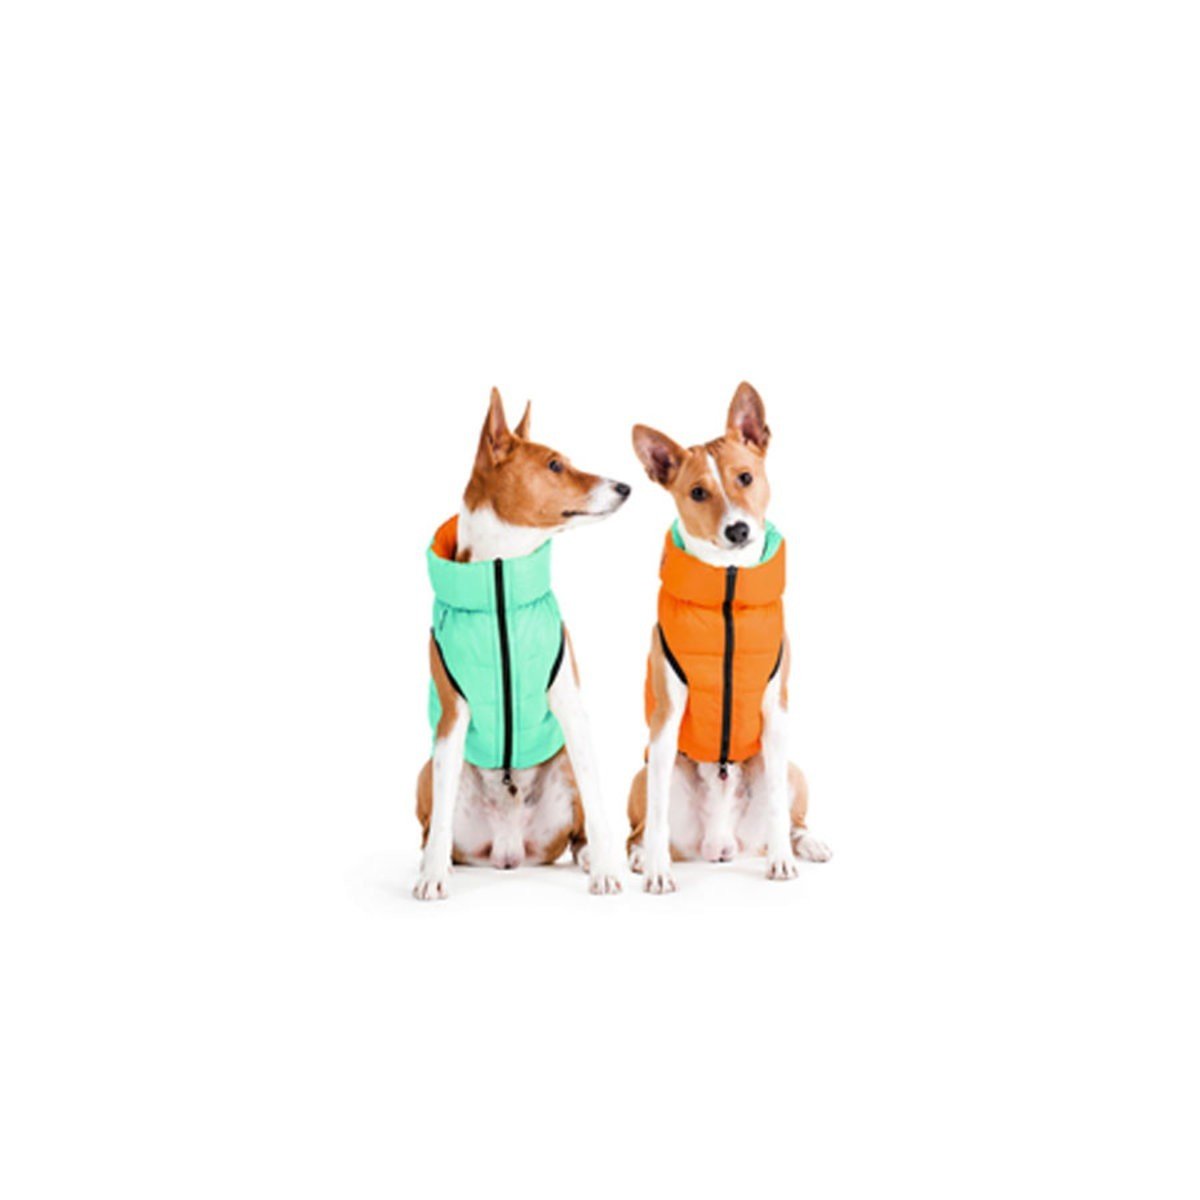 Курточка для собак AiryVest Lumi двухсторонняя, светящаяся в темноте, L65, салатово-оранжевая - фото 2